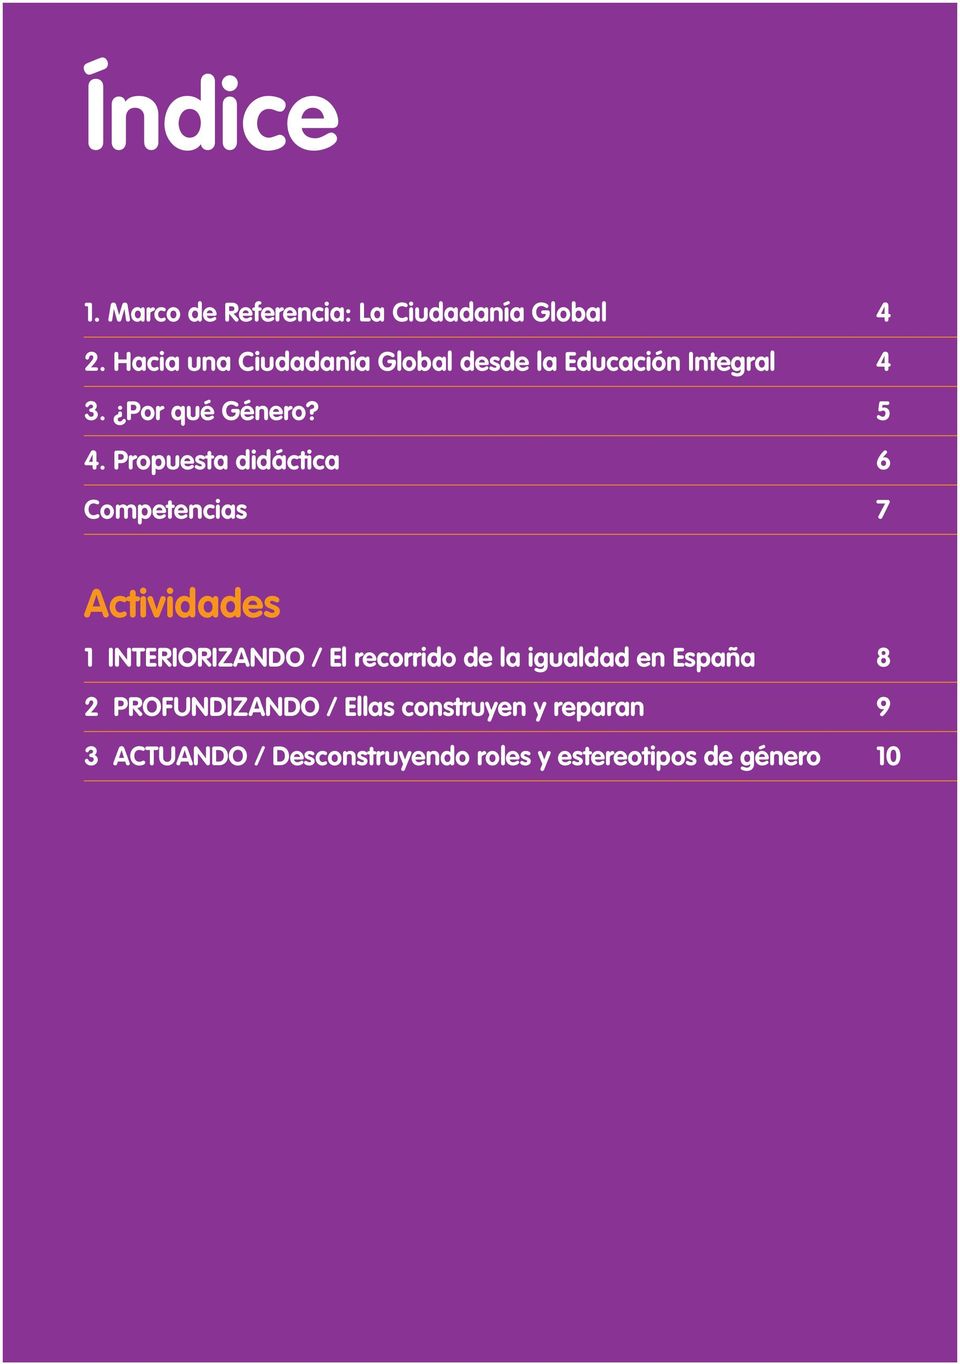 Propuesta didáctica 6 Competencias 7 Actividades 1 INTERIORIZANDO / El recorrido de la igualdad en España 8